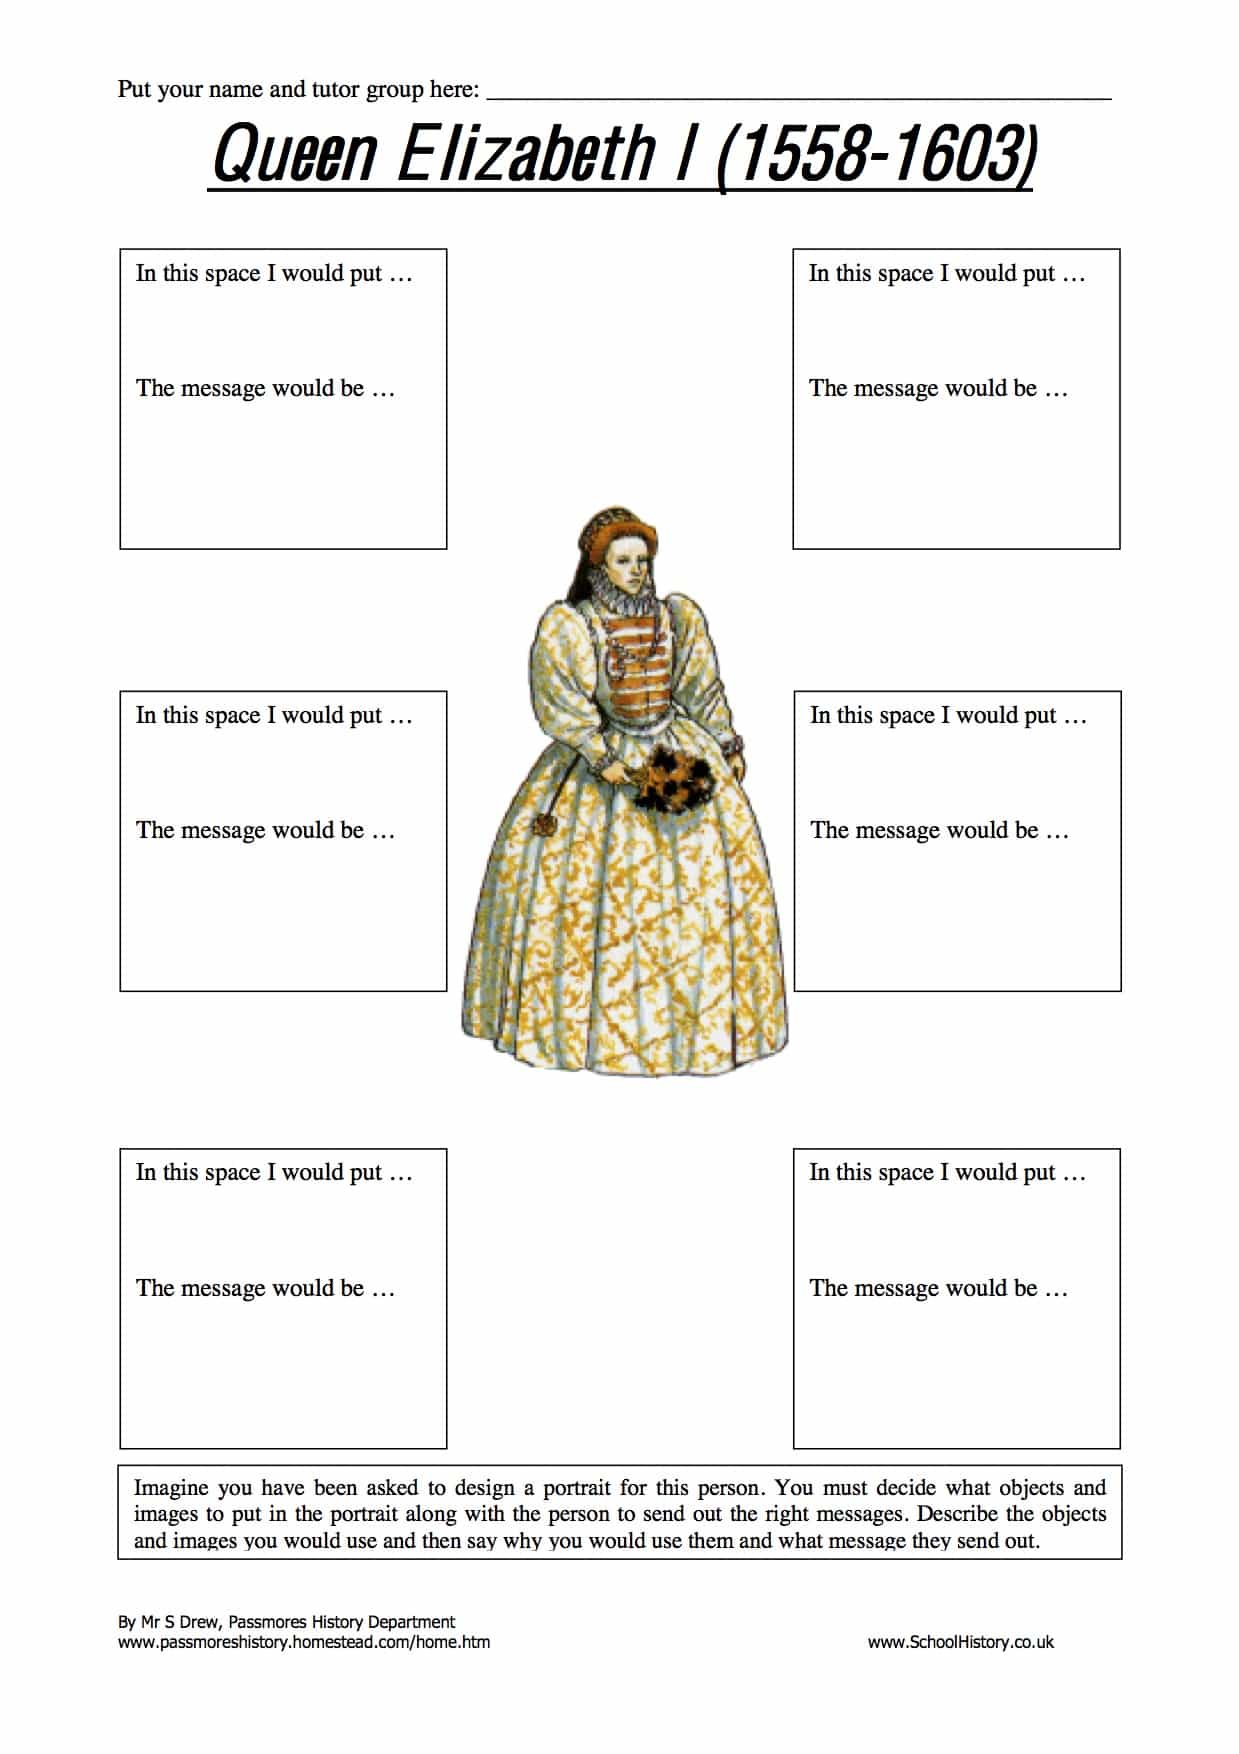 Queen Elizabeth I Portrait Activity Free Worksheet